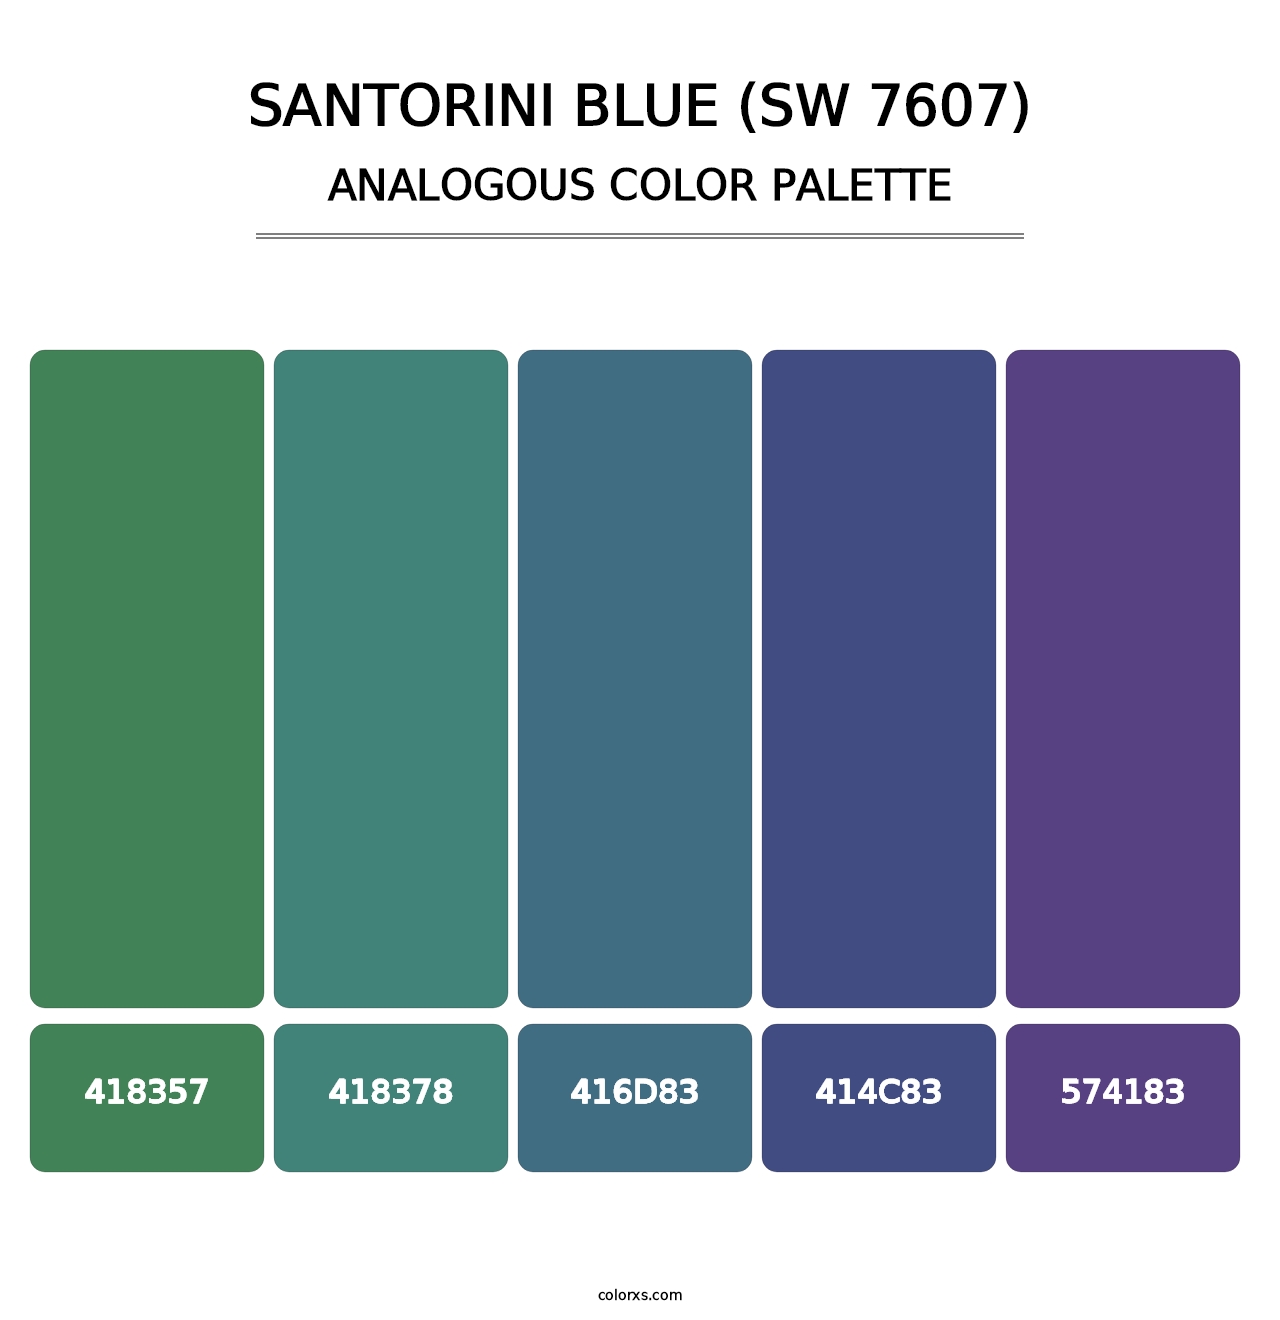 Santorini Blue (SW 7607) - Analogous Color Palette